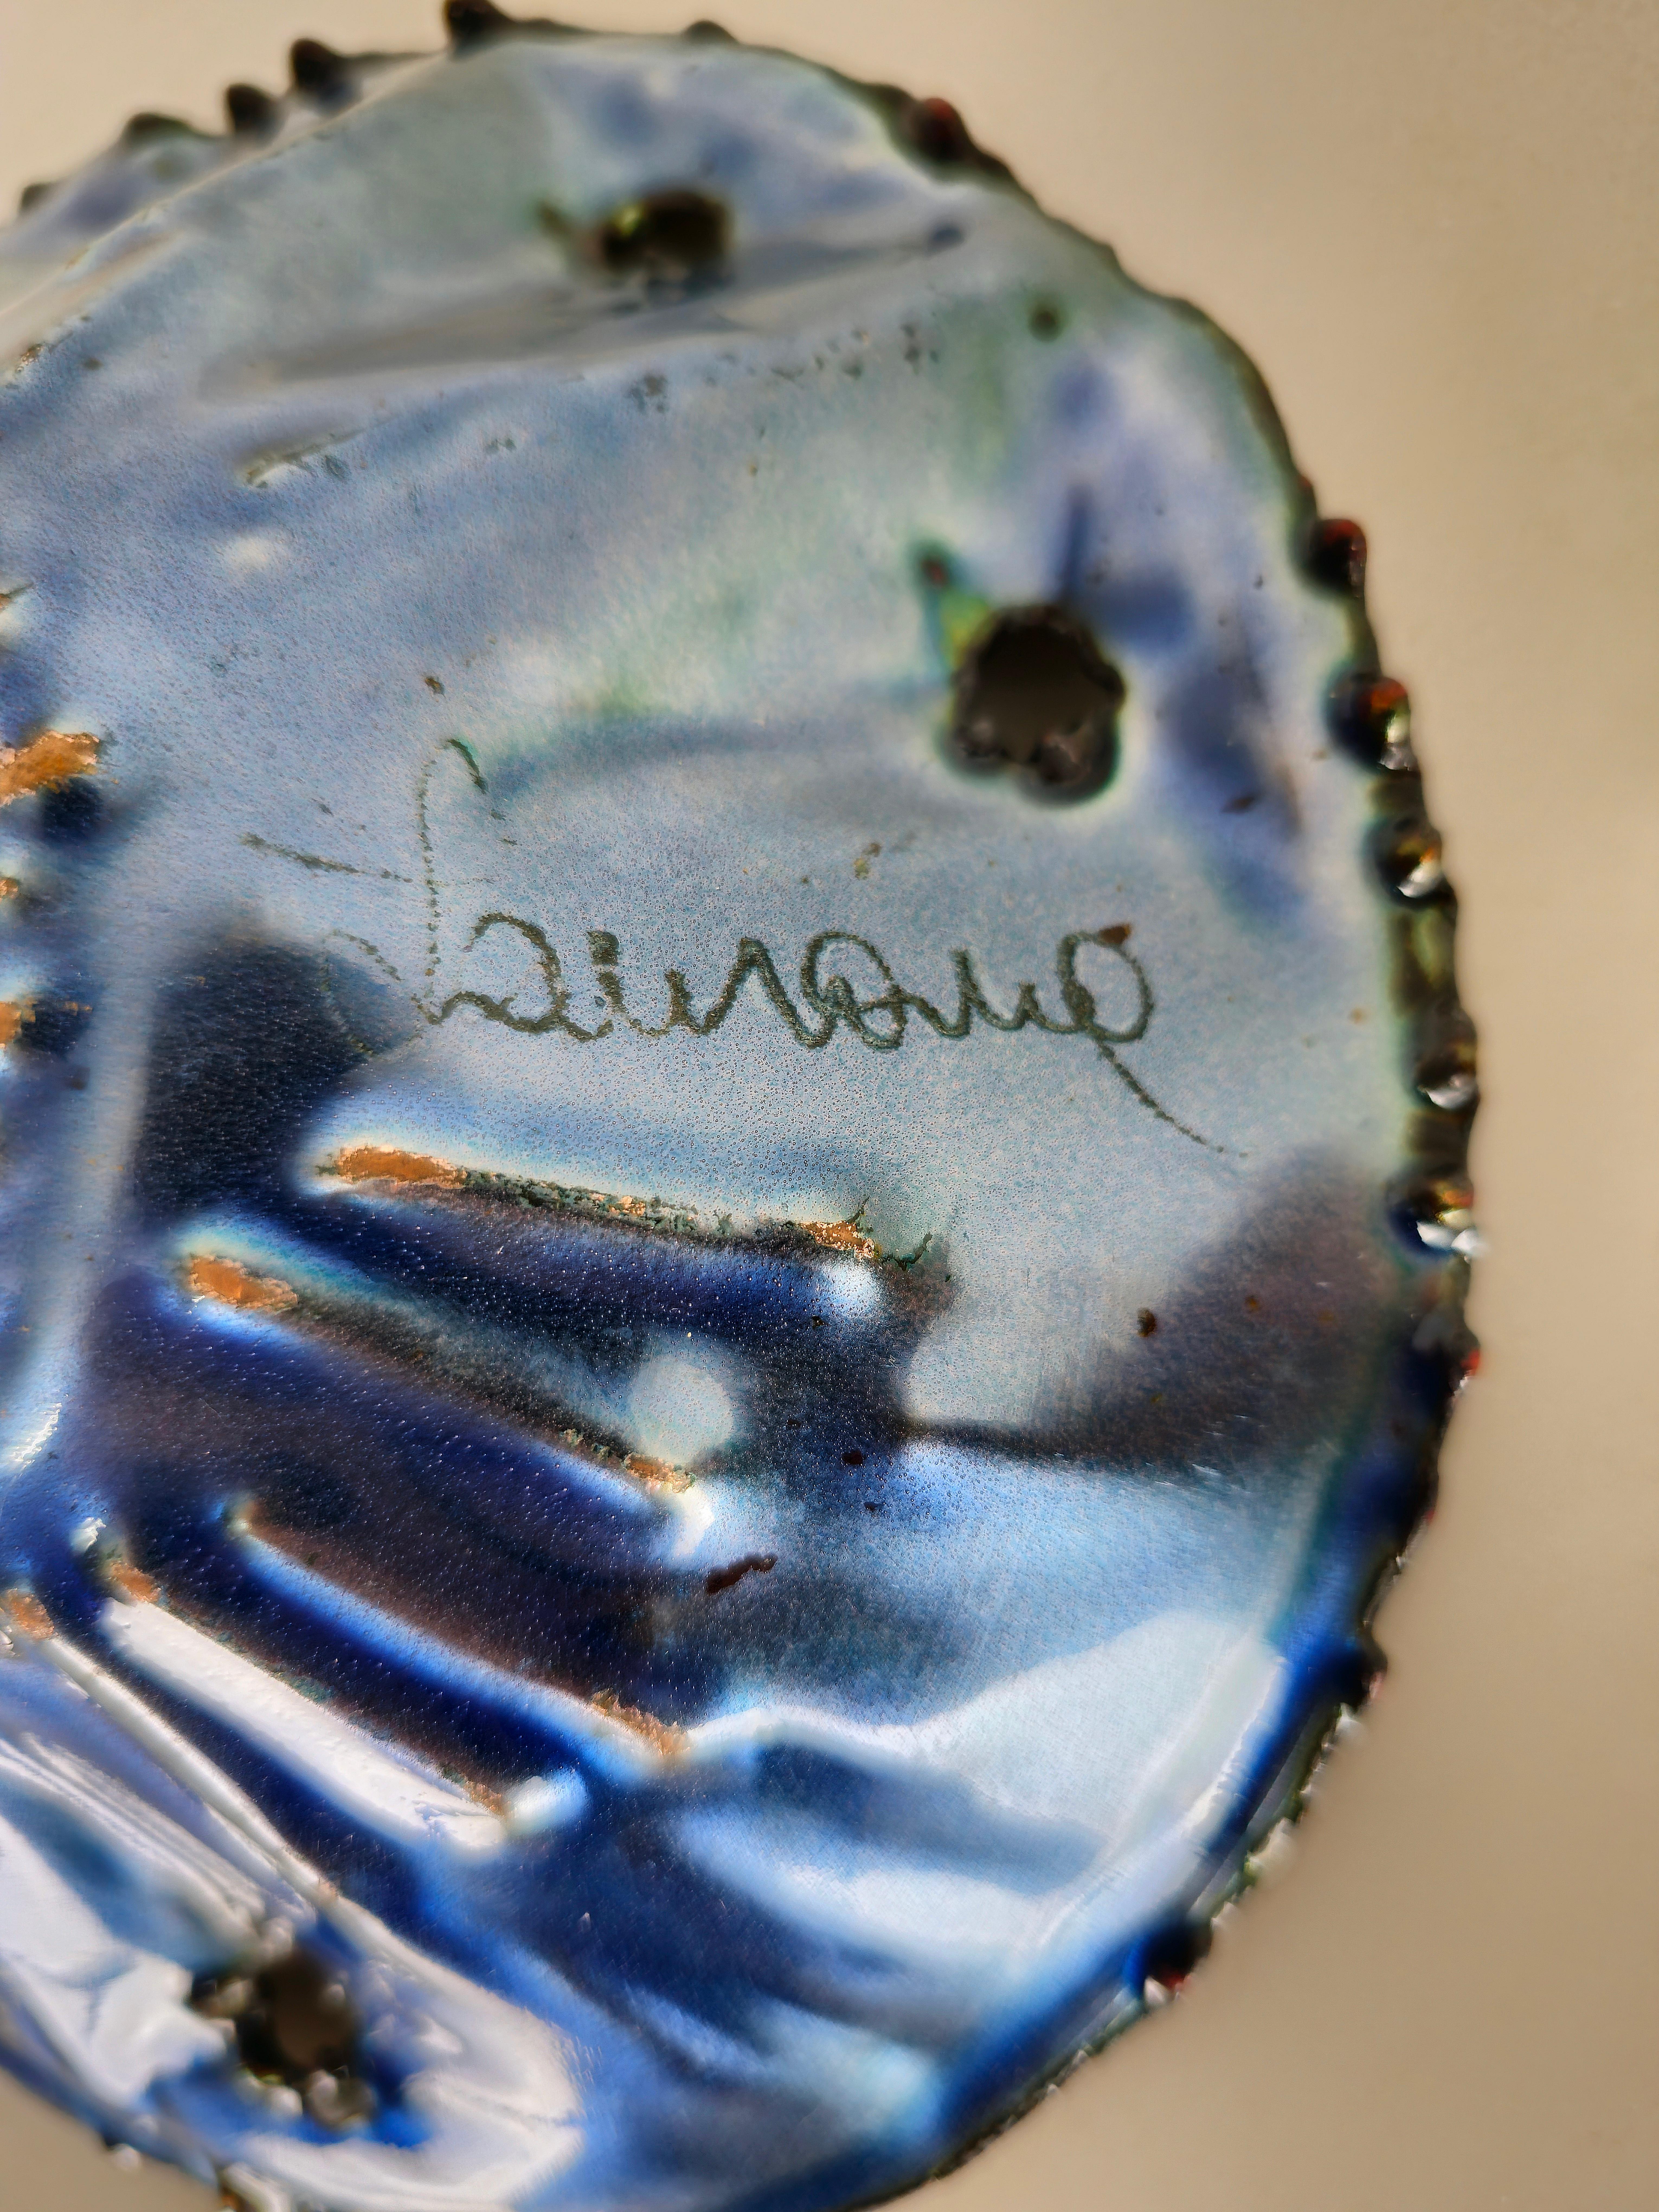 Bol/objet décoratif de Franco Bastianelli pour Laurana fabriqué en Italie dans les années 60. Le bol aux formes particulières a été réalisé en cuivre émaillé dans des tons bleus, verts et rouges. L'objet est signé Laurana comme le montrent les